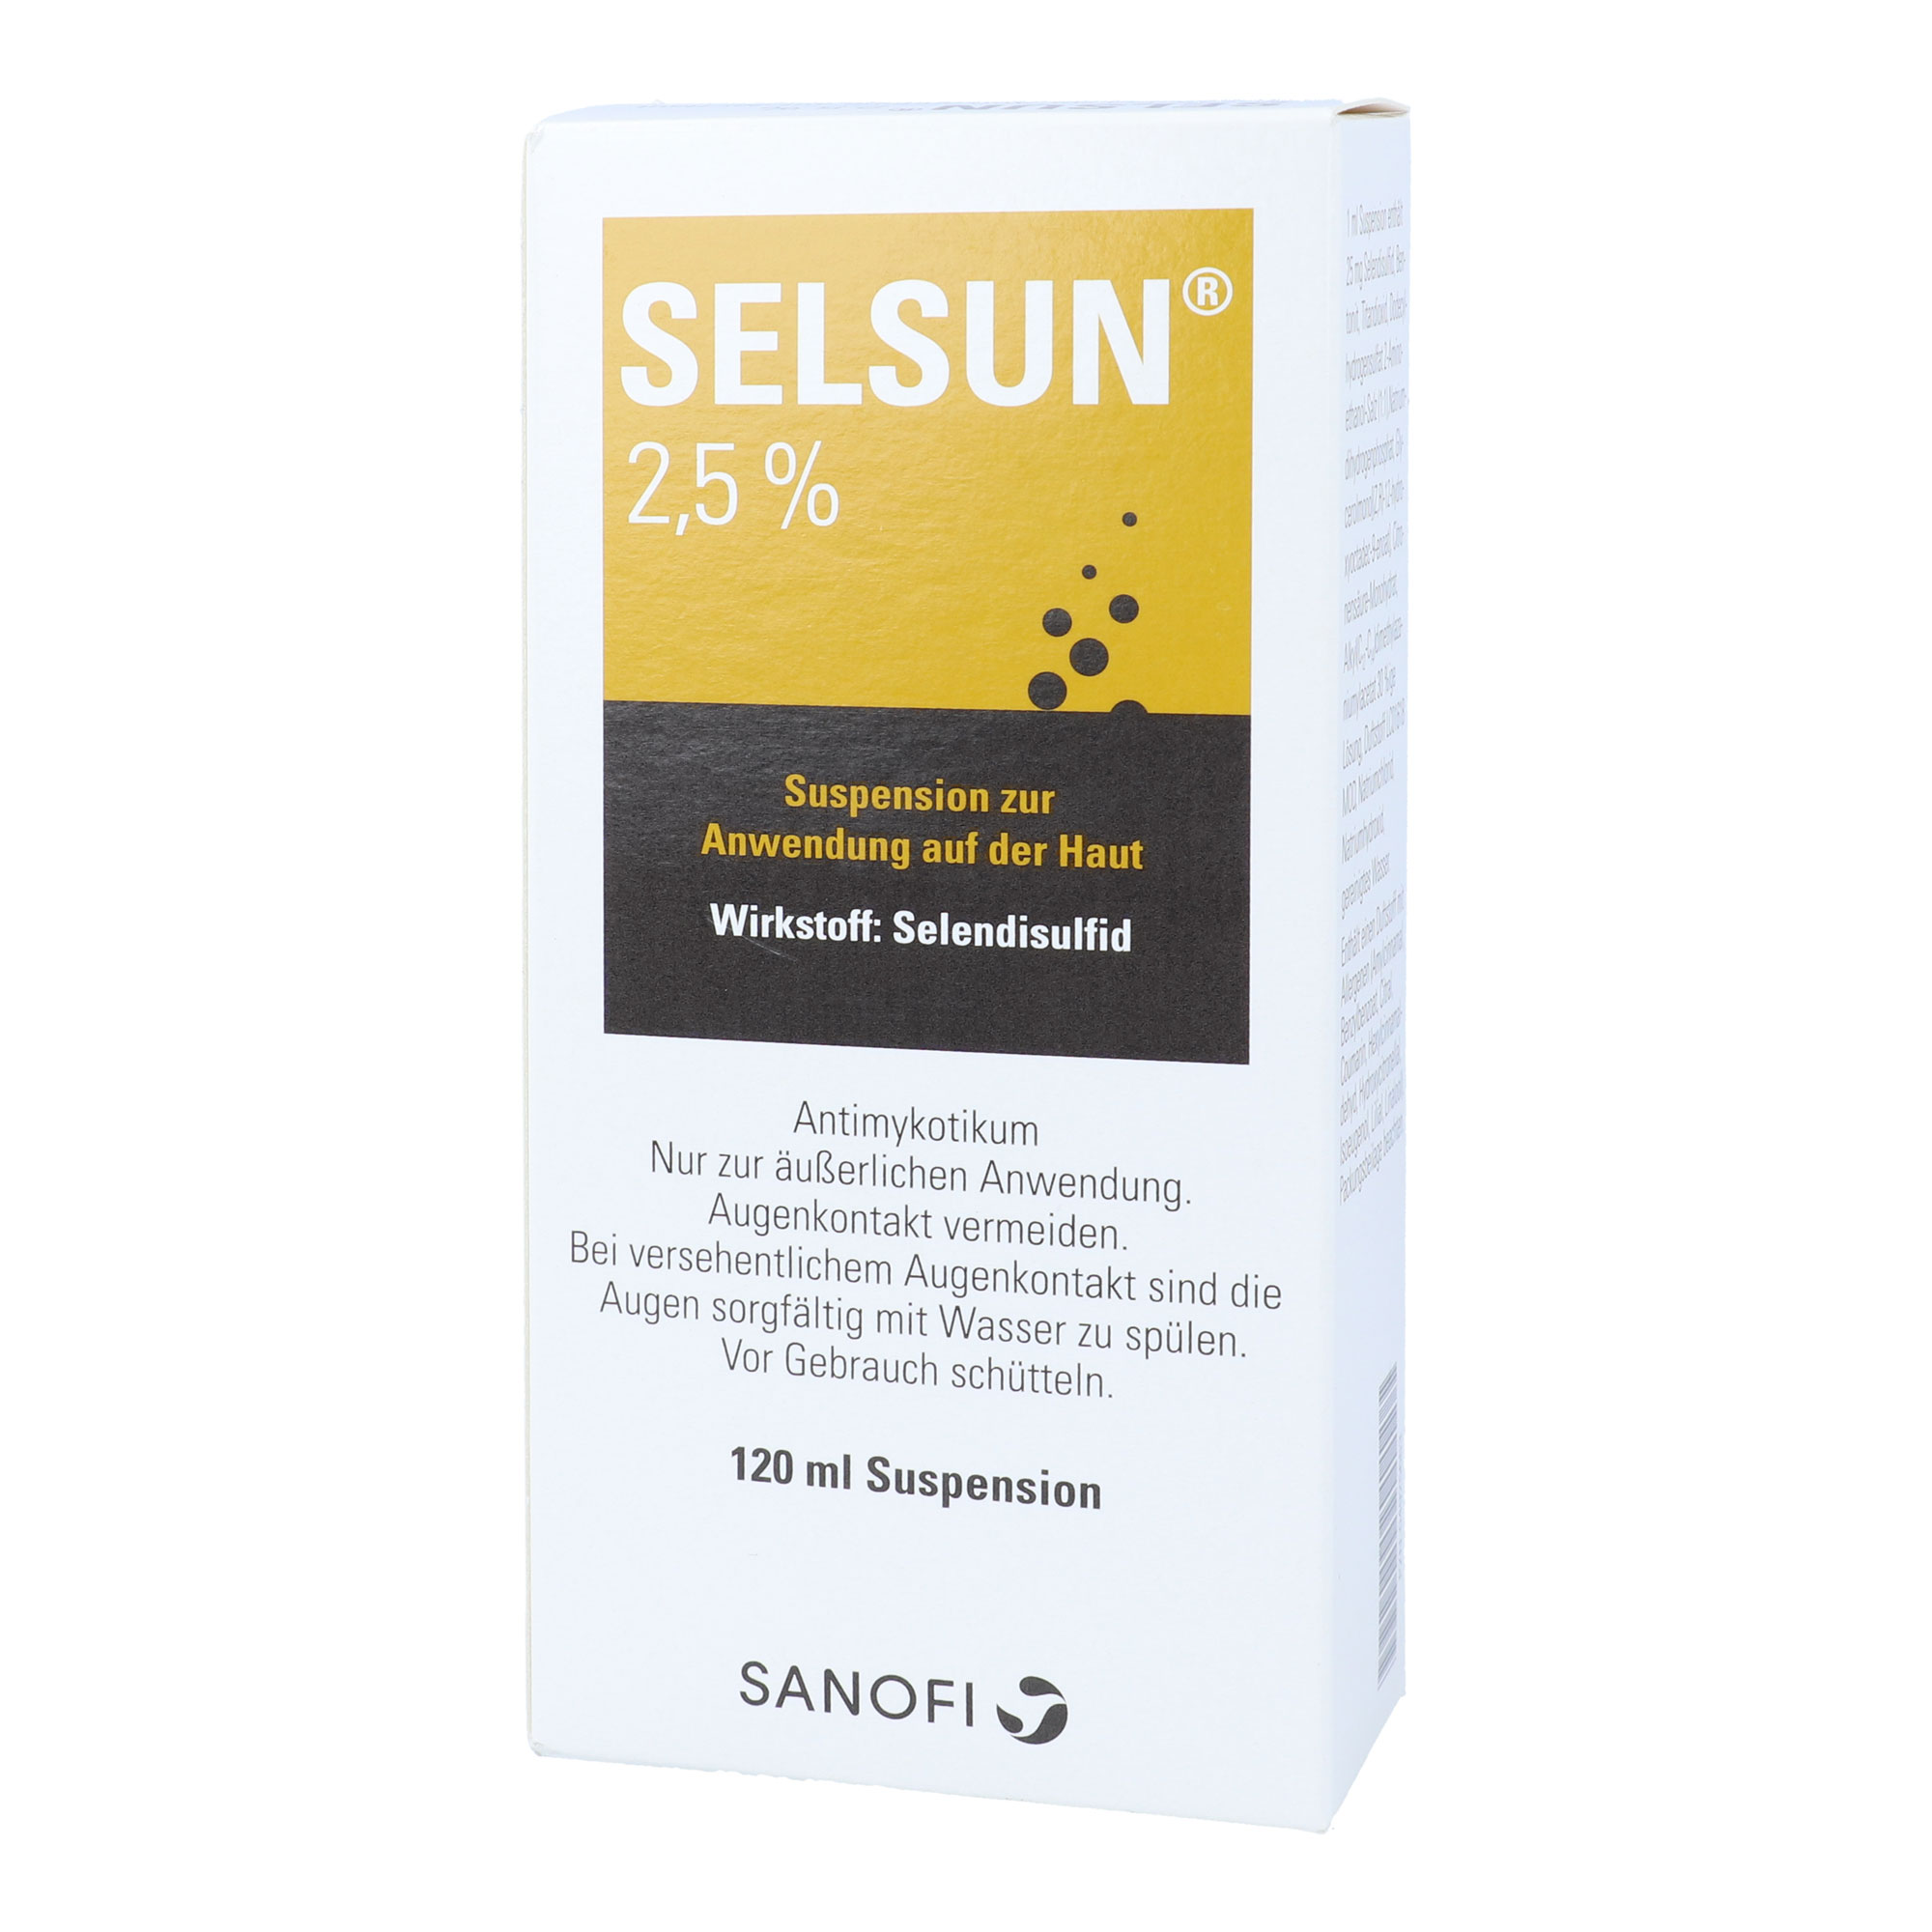 Mittel gegen fettende, schuppende Hauterkrankungen mit dem Wirkstoff Selendisulfid.